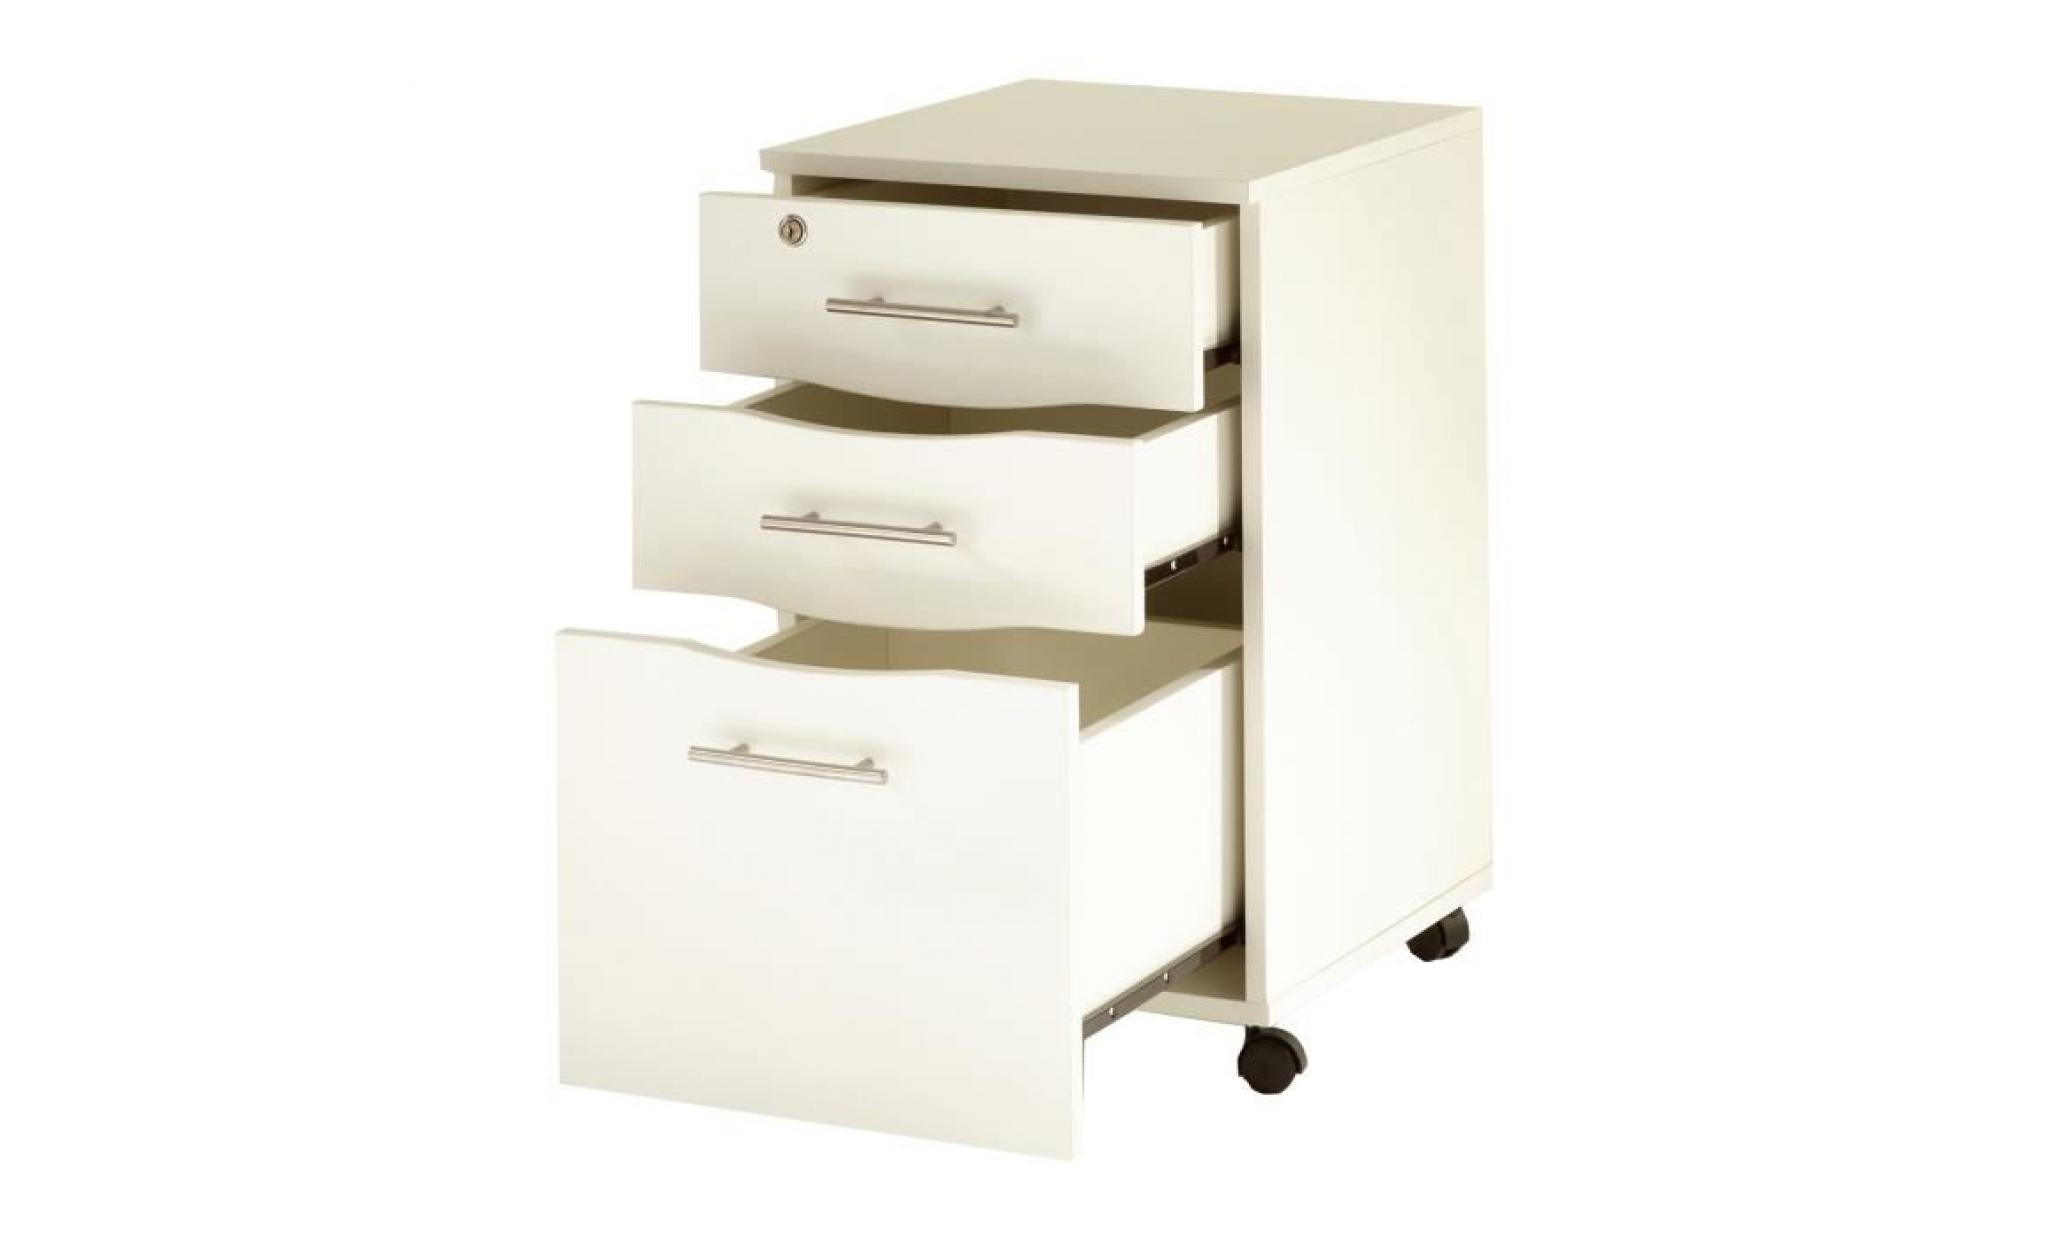 mmt white 3 drawer mobile under desk pedestal filing cabinet lockable pas cher